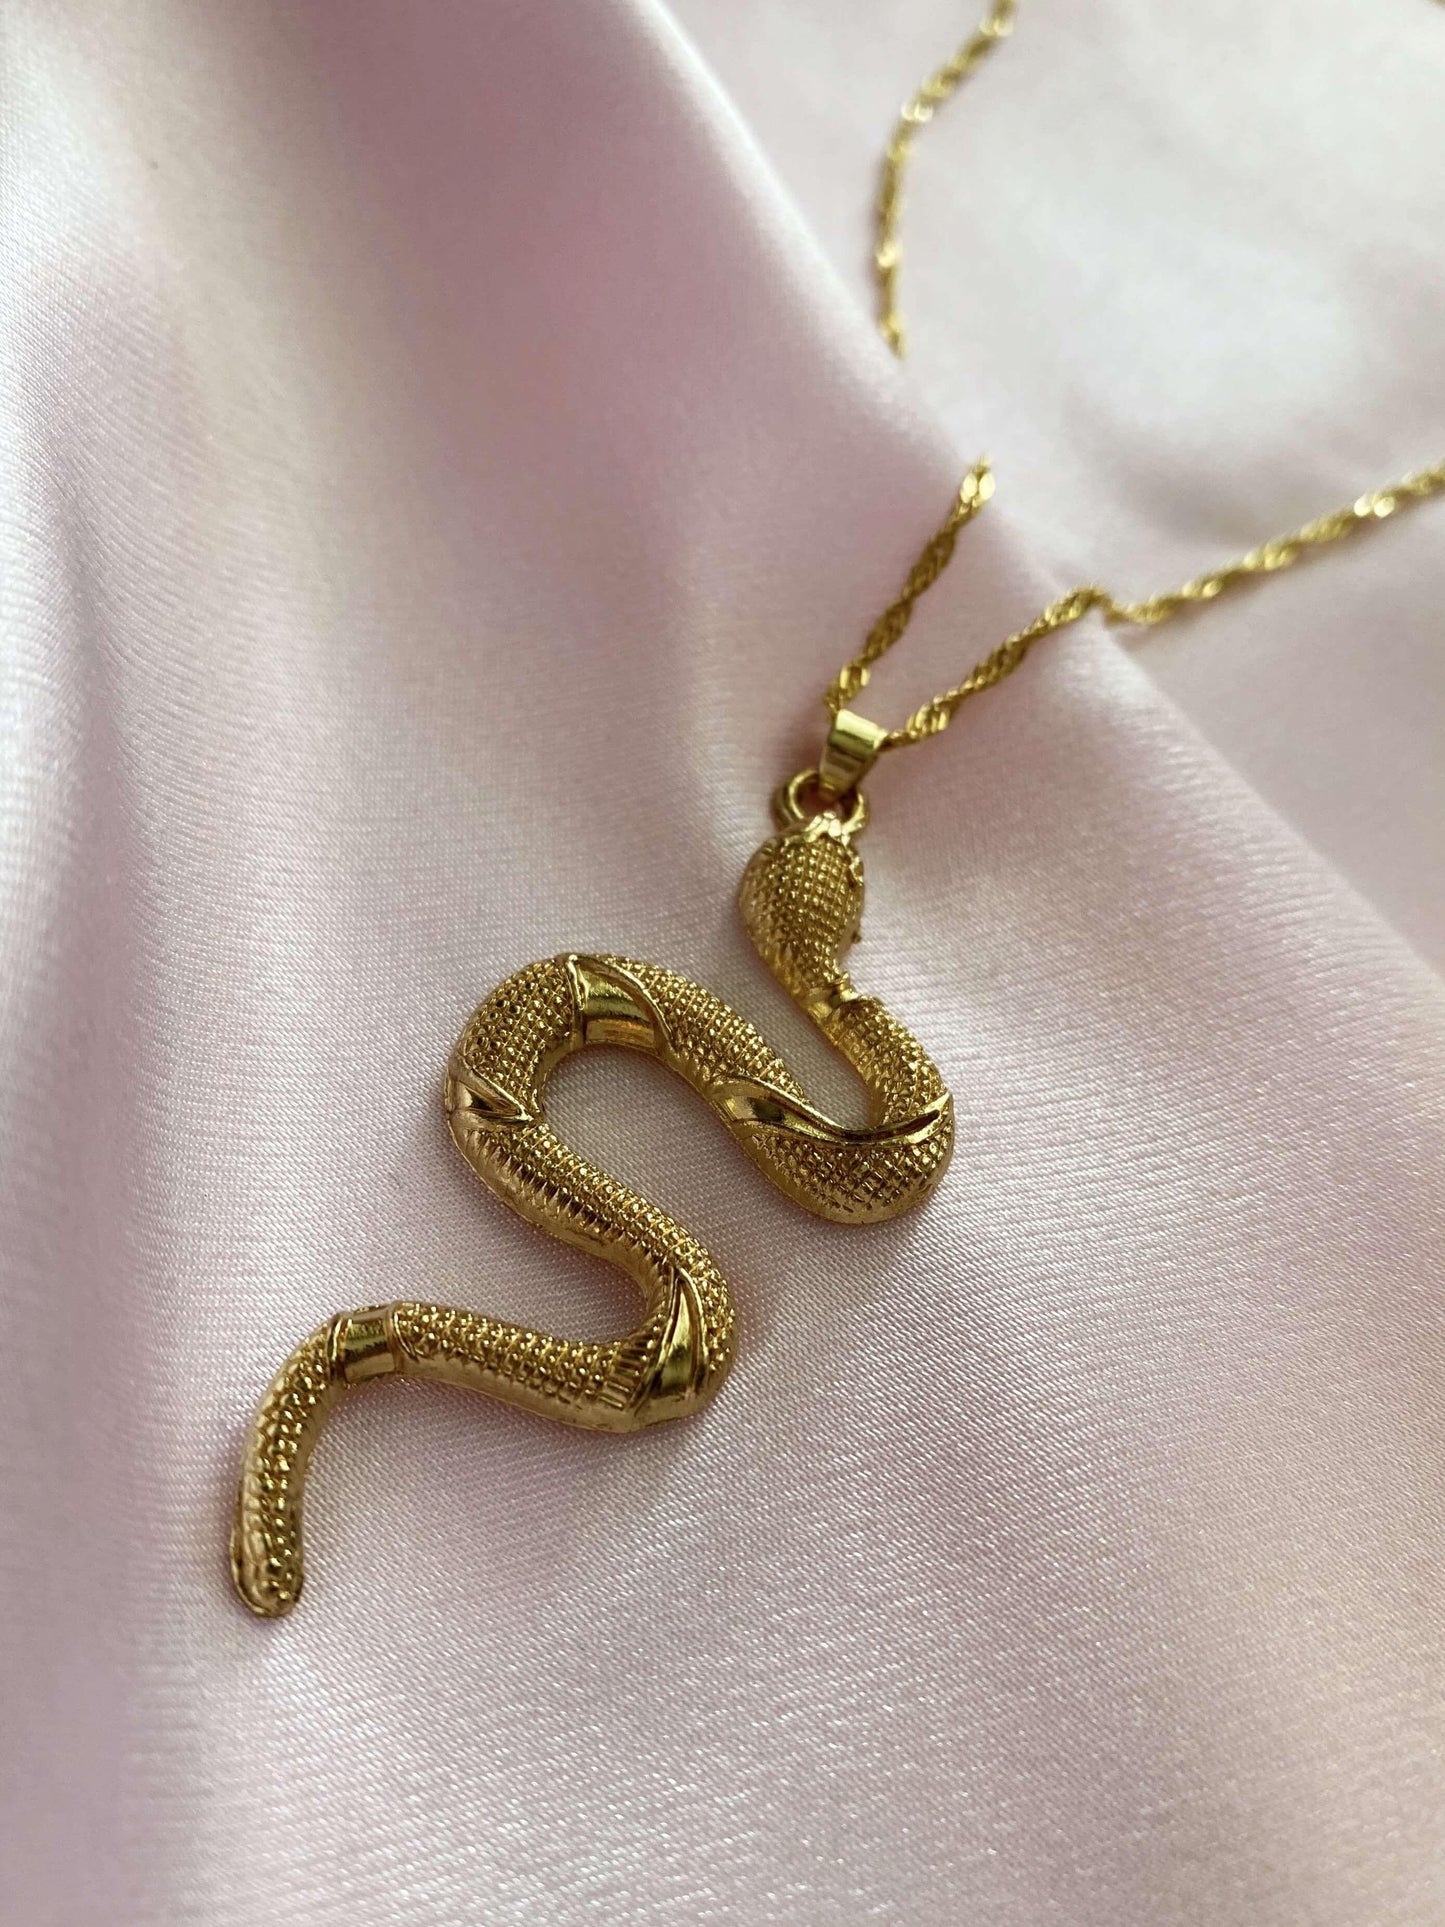 Retro Serpent Necklace - Luna Alaska Jewelry